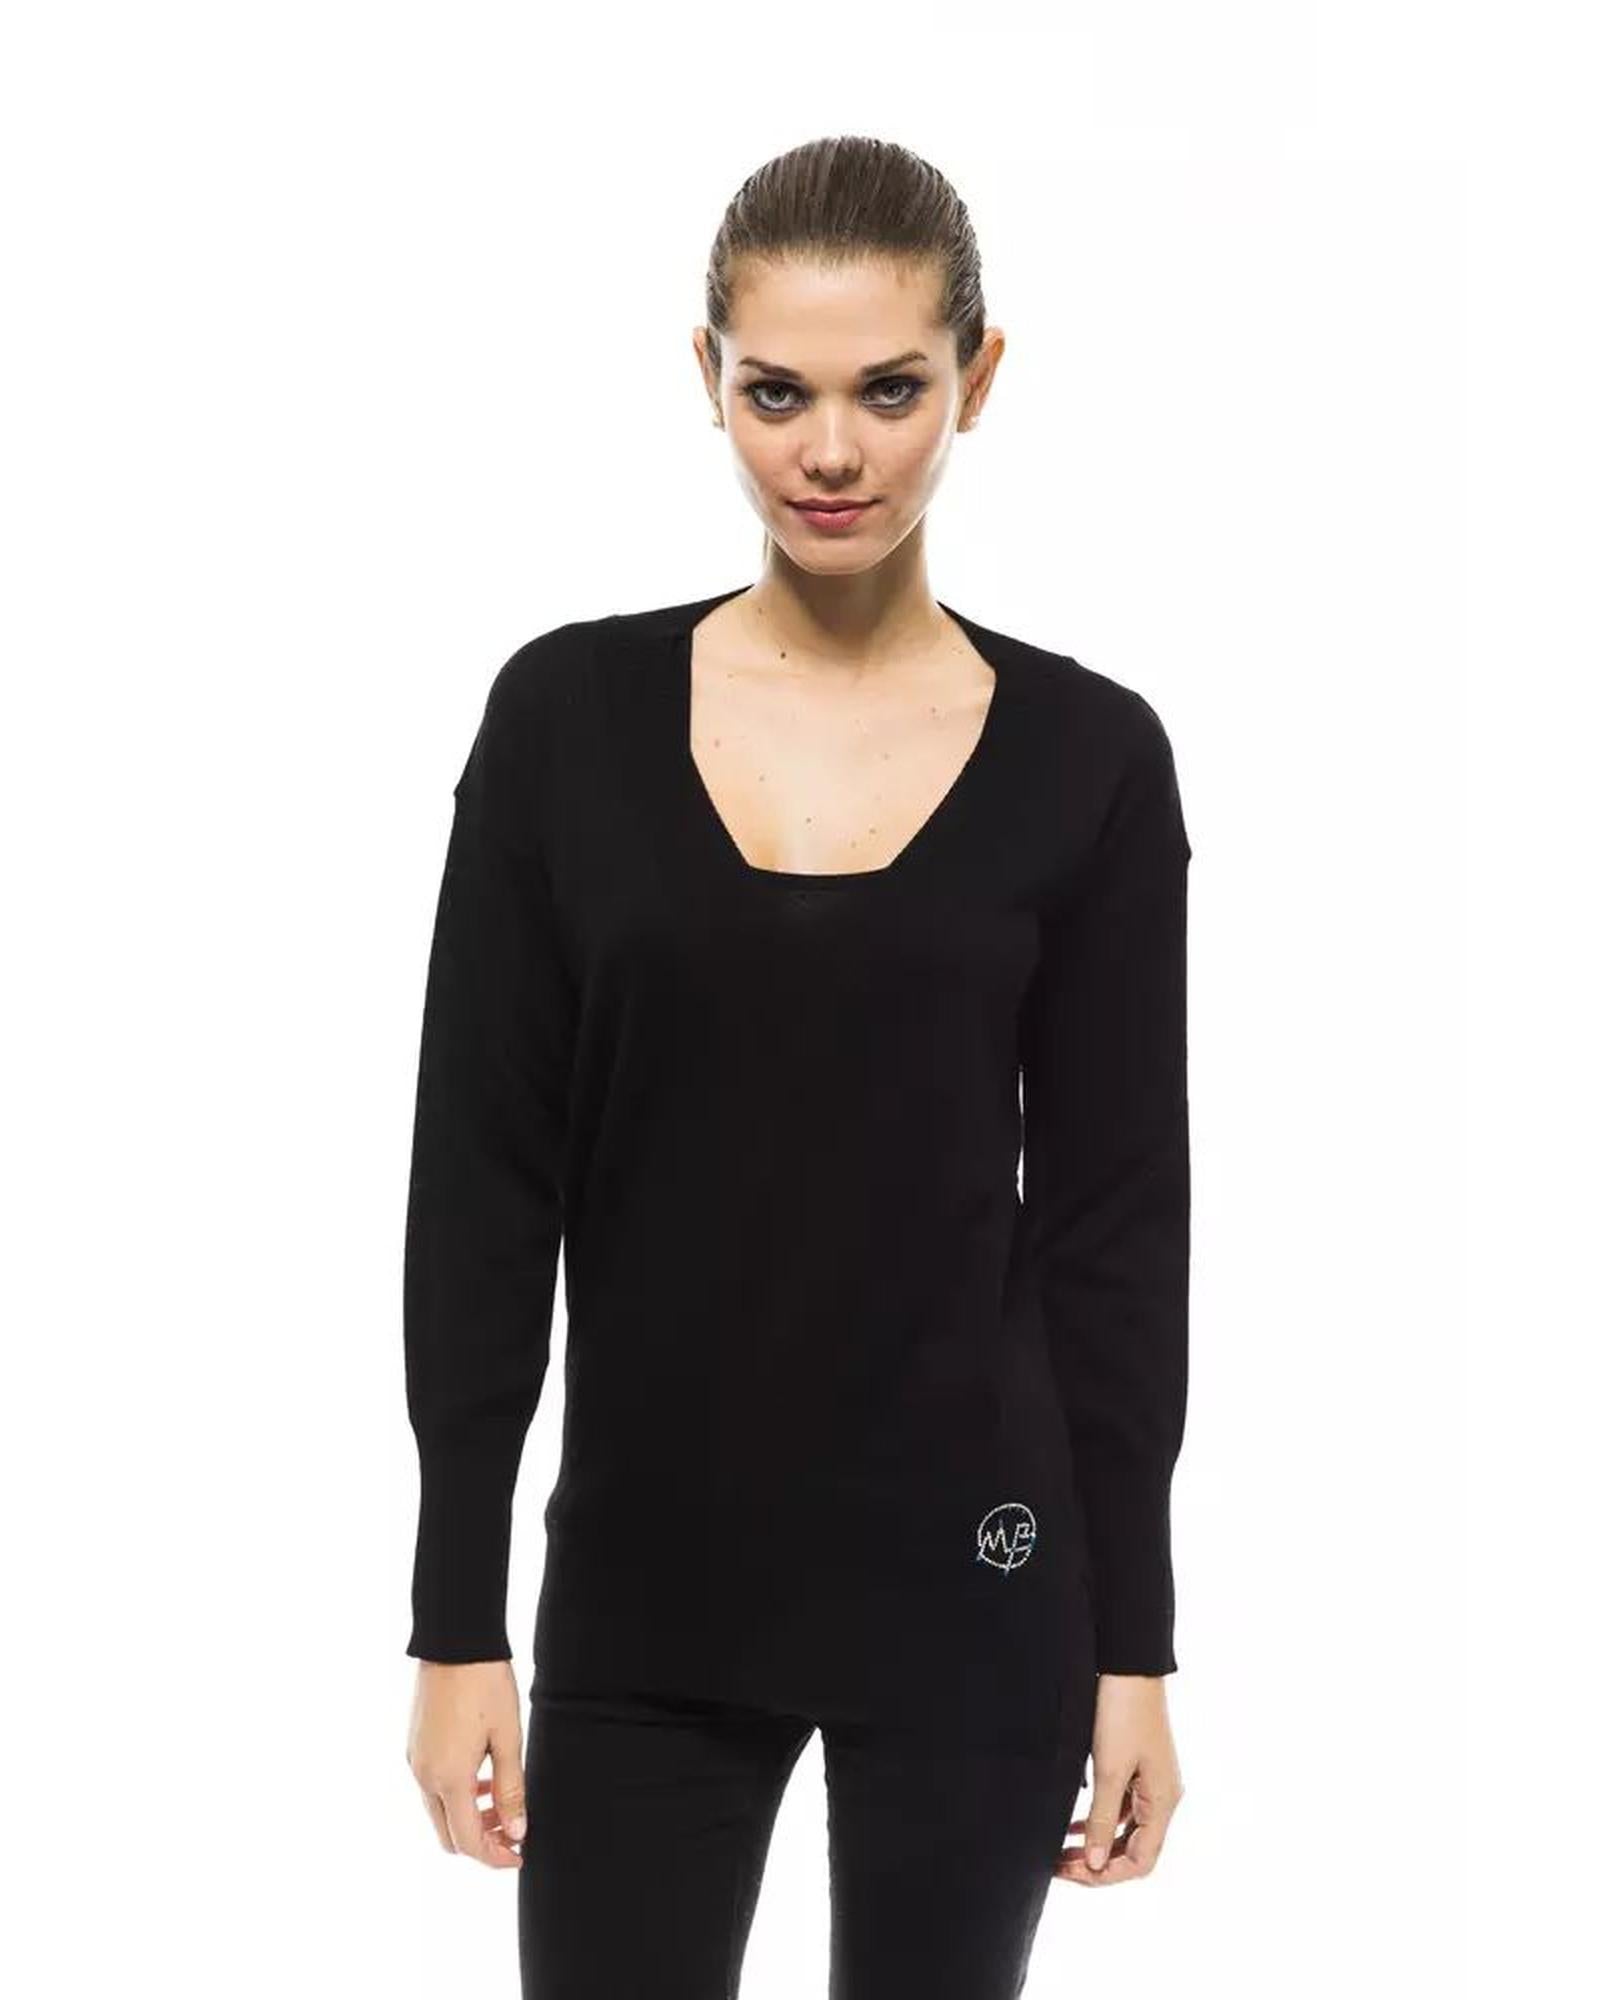 Women's Black Wool Sweater - 44 IT